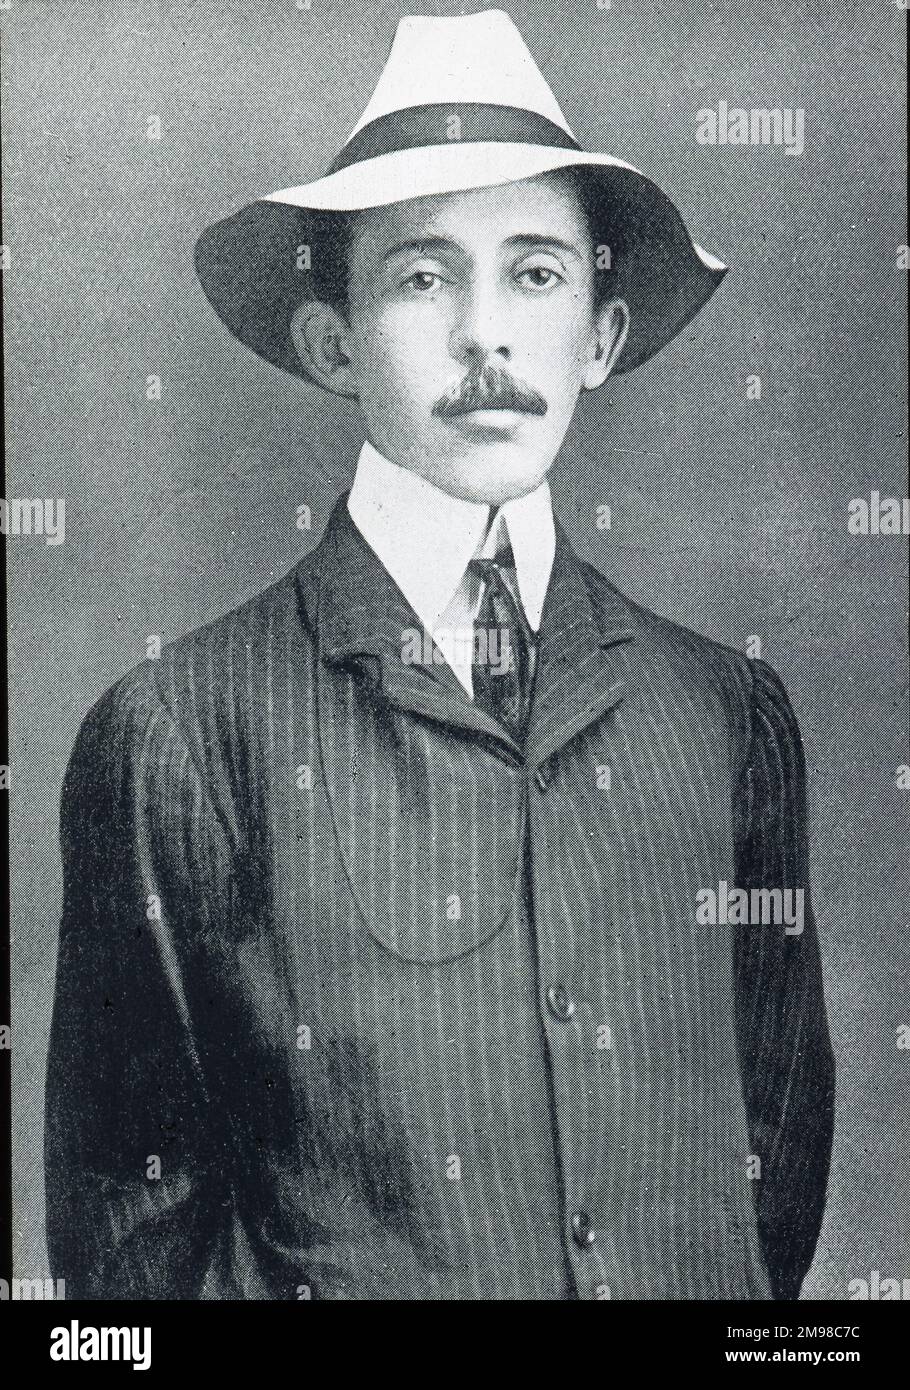 Alberto Santos-Dumont, 1873-1932. Stock Photo